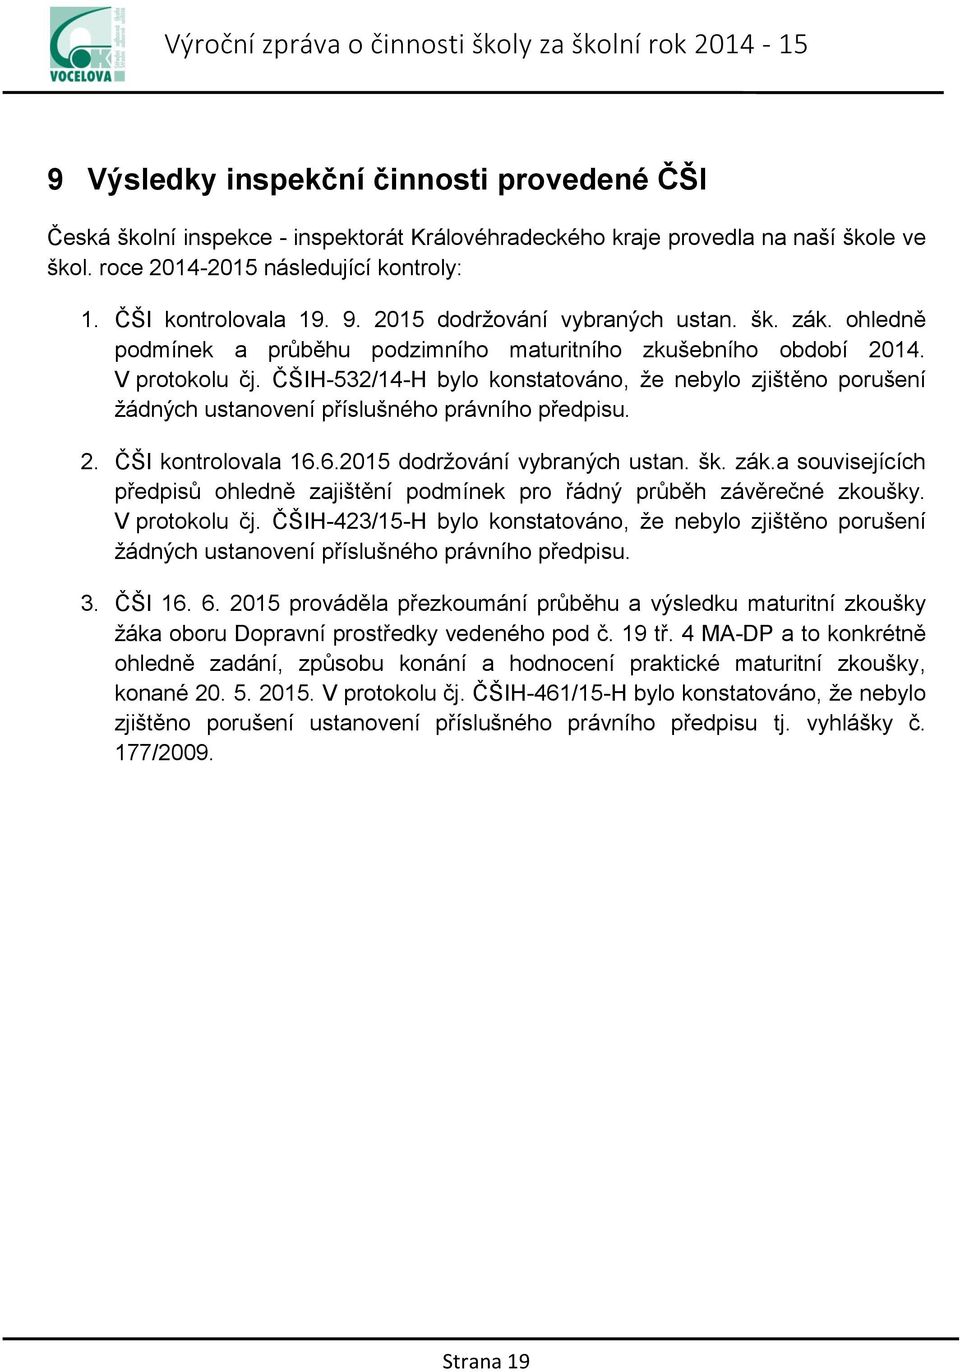 ČŠIH-532/14-H bylo konstatováno, že nebylo zjištěno porušení žádných ustanovení příslušného právního předpisu. 2. ČŠI kontrolovala 16.6.2015 dodržování vybraných ustan. šk. zák.